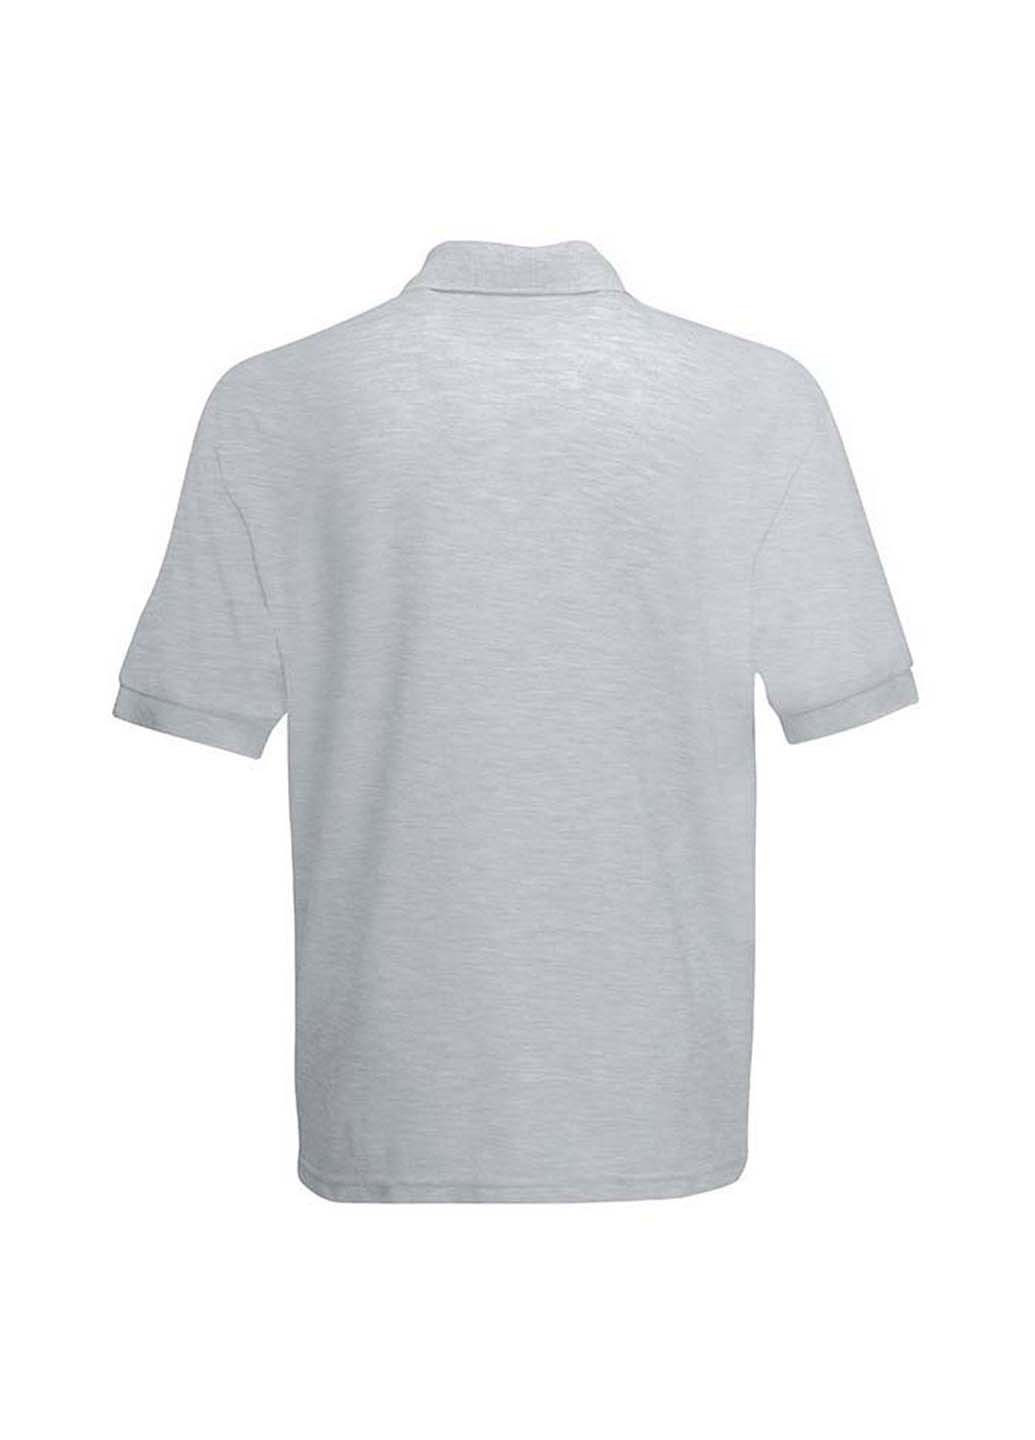 Серая футболка-поло для мужчин Fruit of the Loom